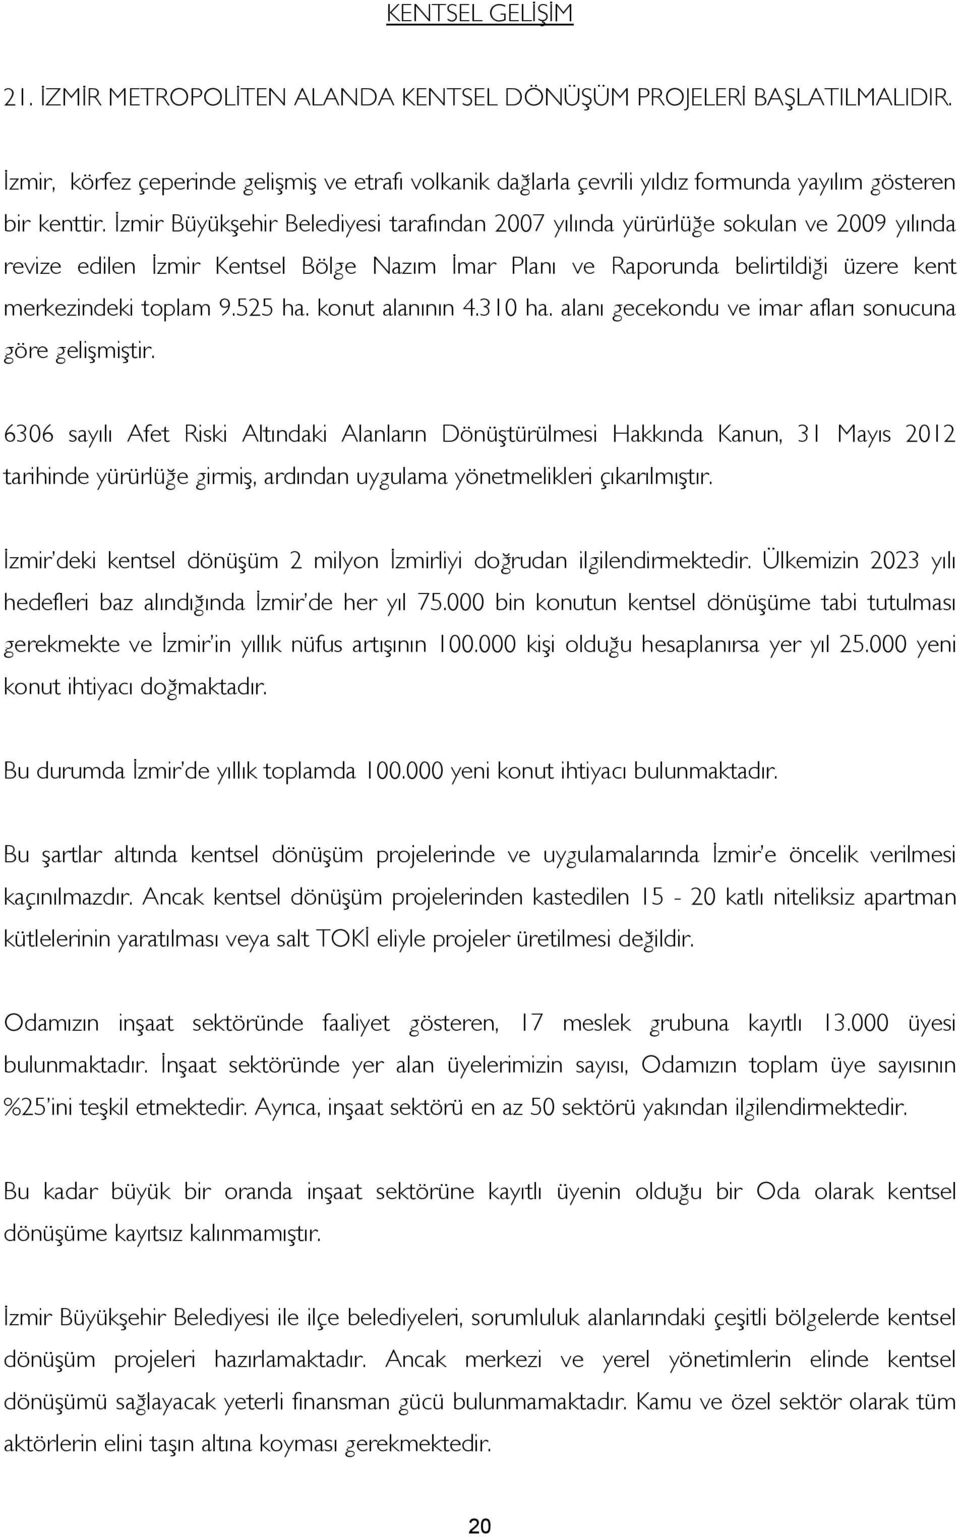 İzmir Büyükşehir Belediyesi tarafından 2007 yılında yürürlüğe sokulan ve 2009 yılında revize edilen İzmir Kentsel Bölge Nazım İmar Planı ve Raporunda belirtildiği üzere kent merkezindeki toplam 9.